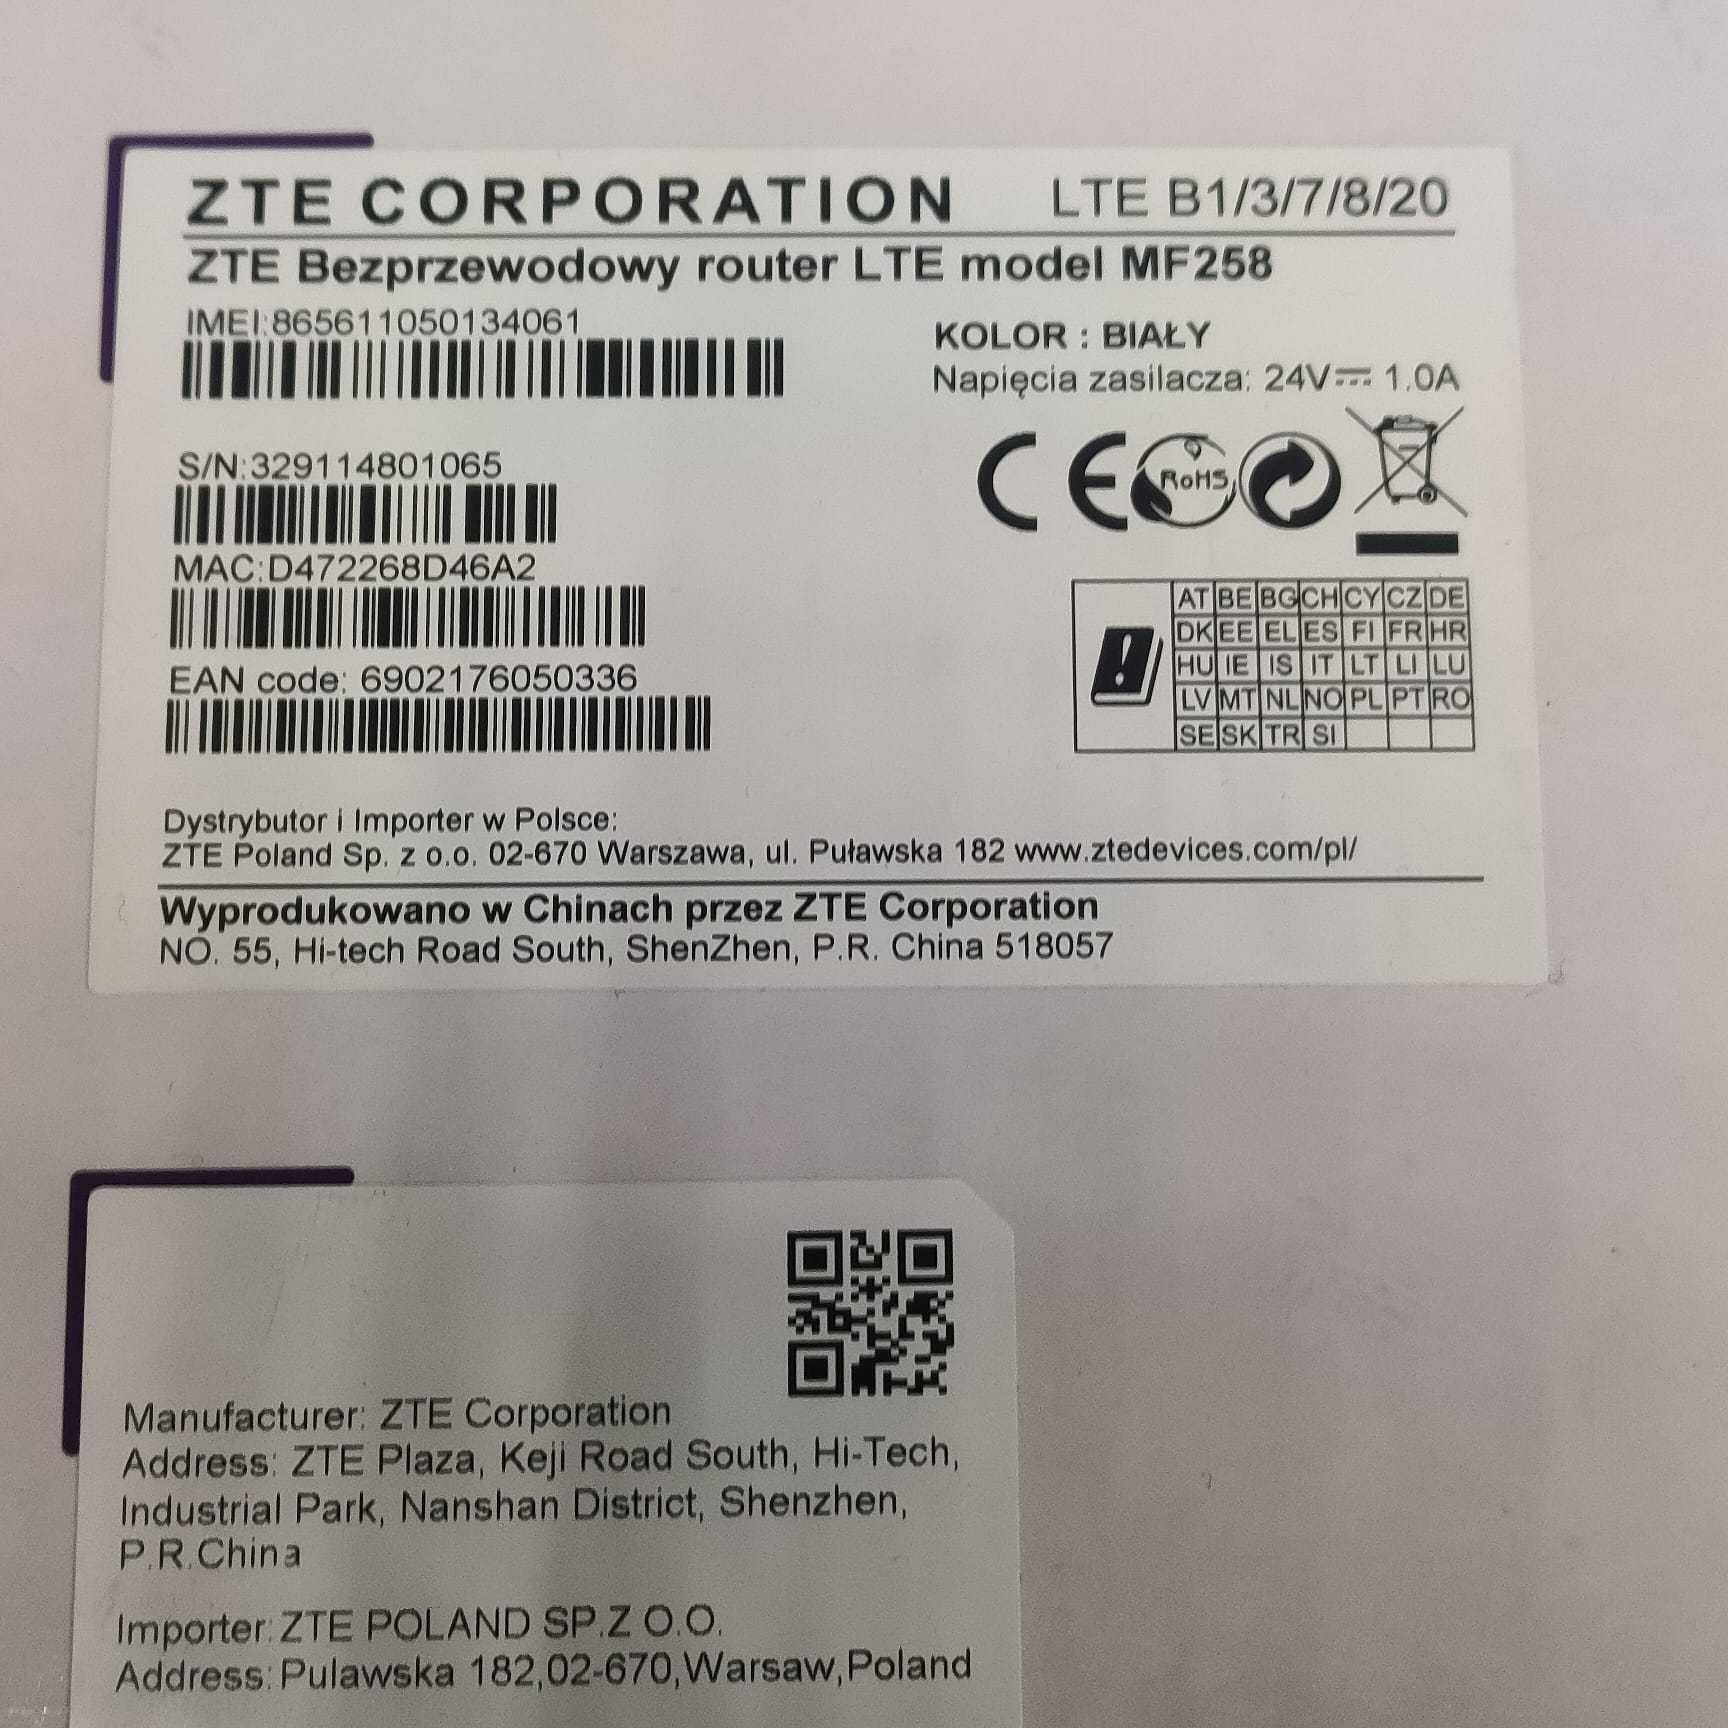 Router ZTE LTE MF258 LTE B1/3/7/8/20